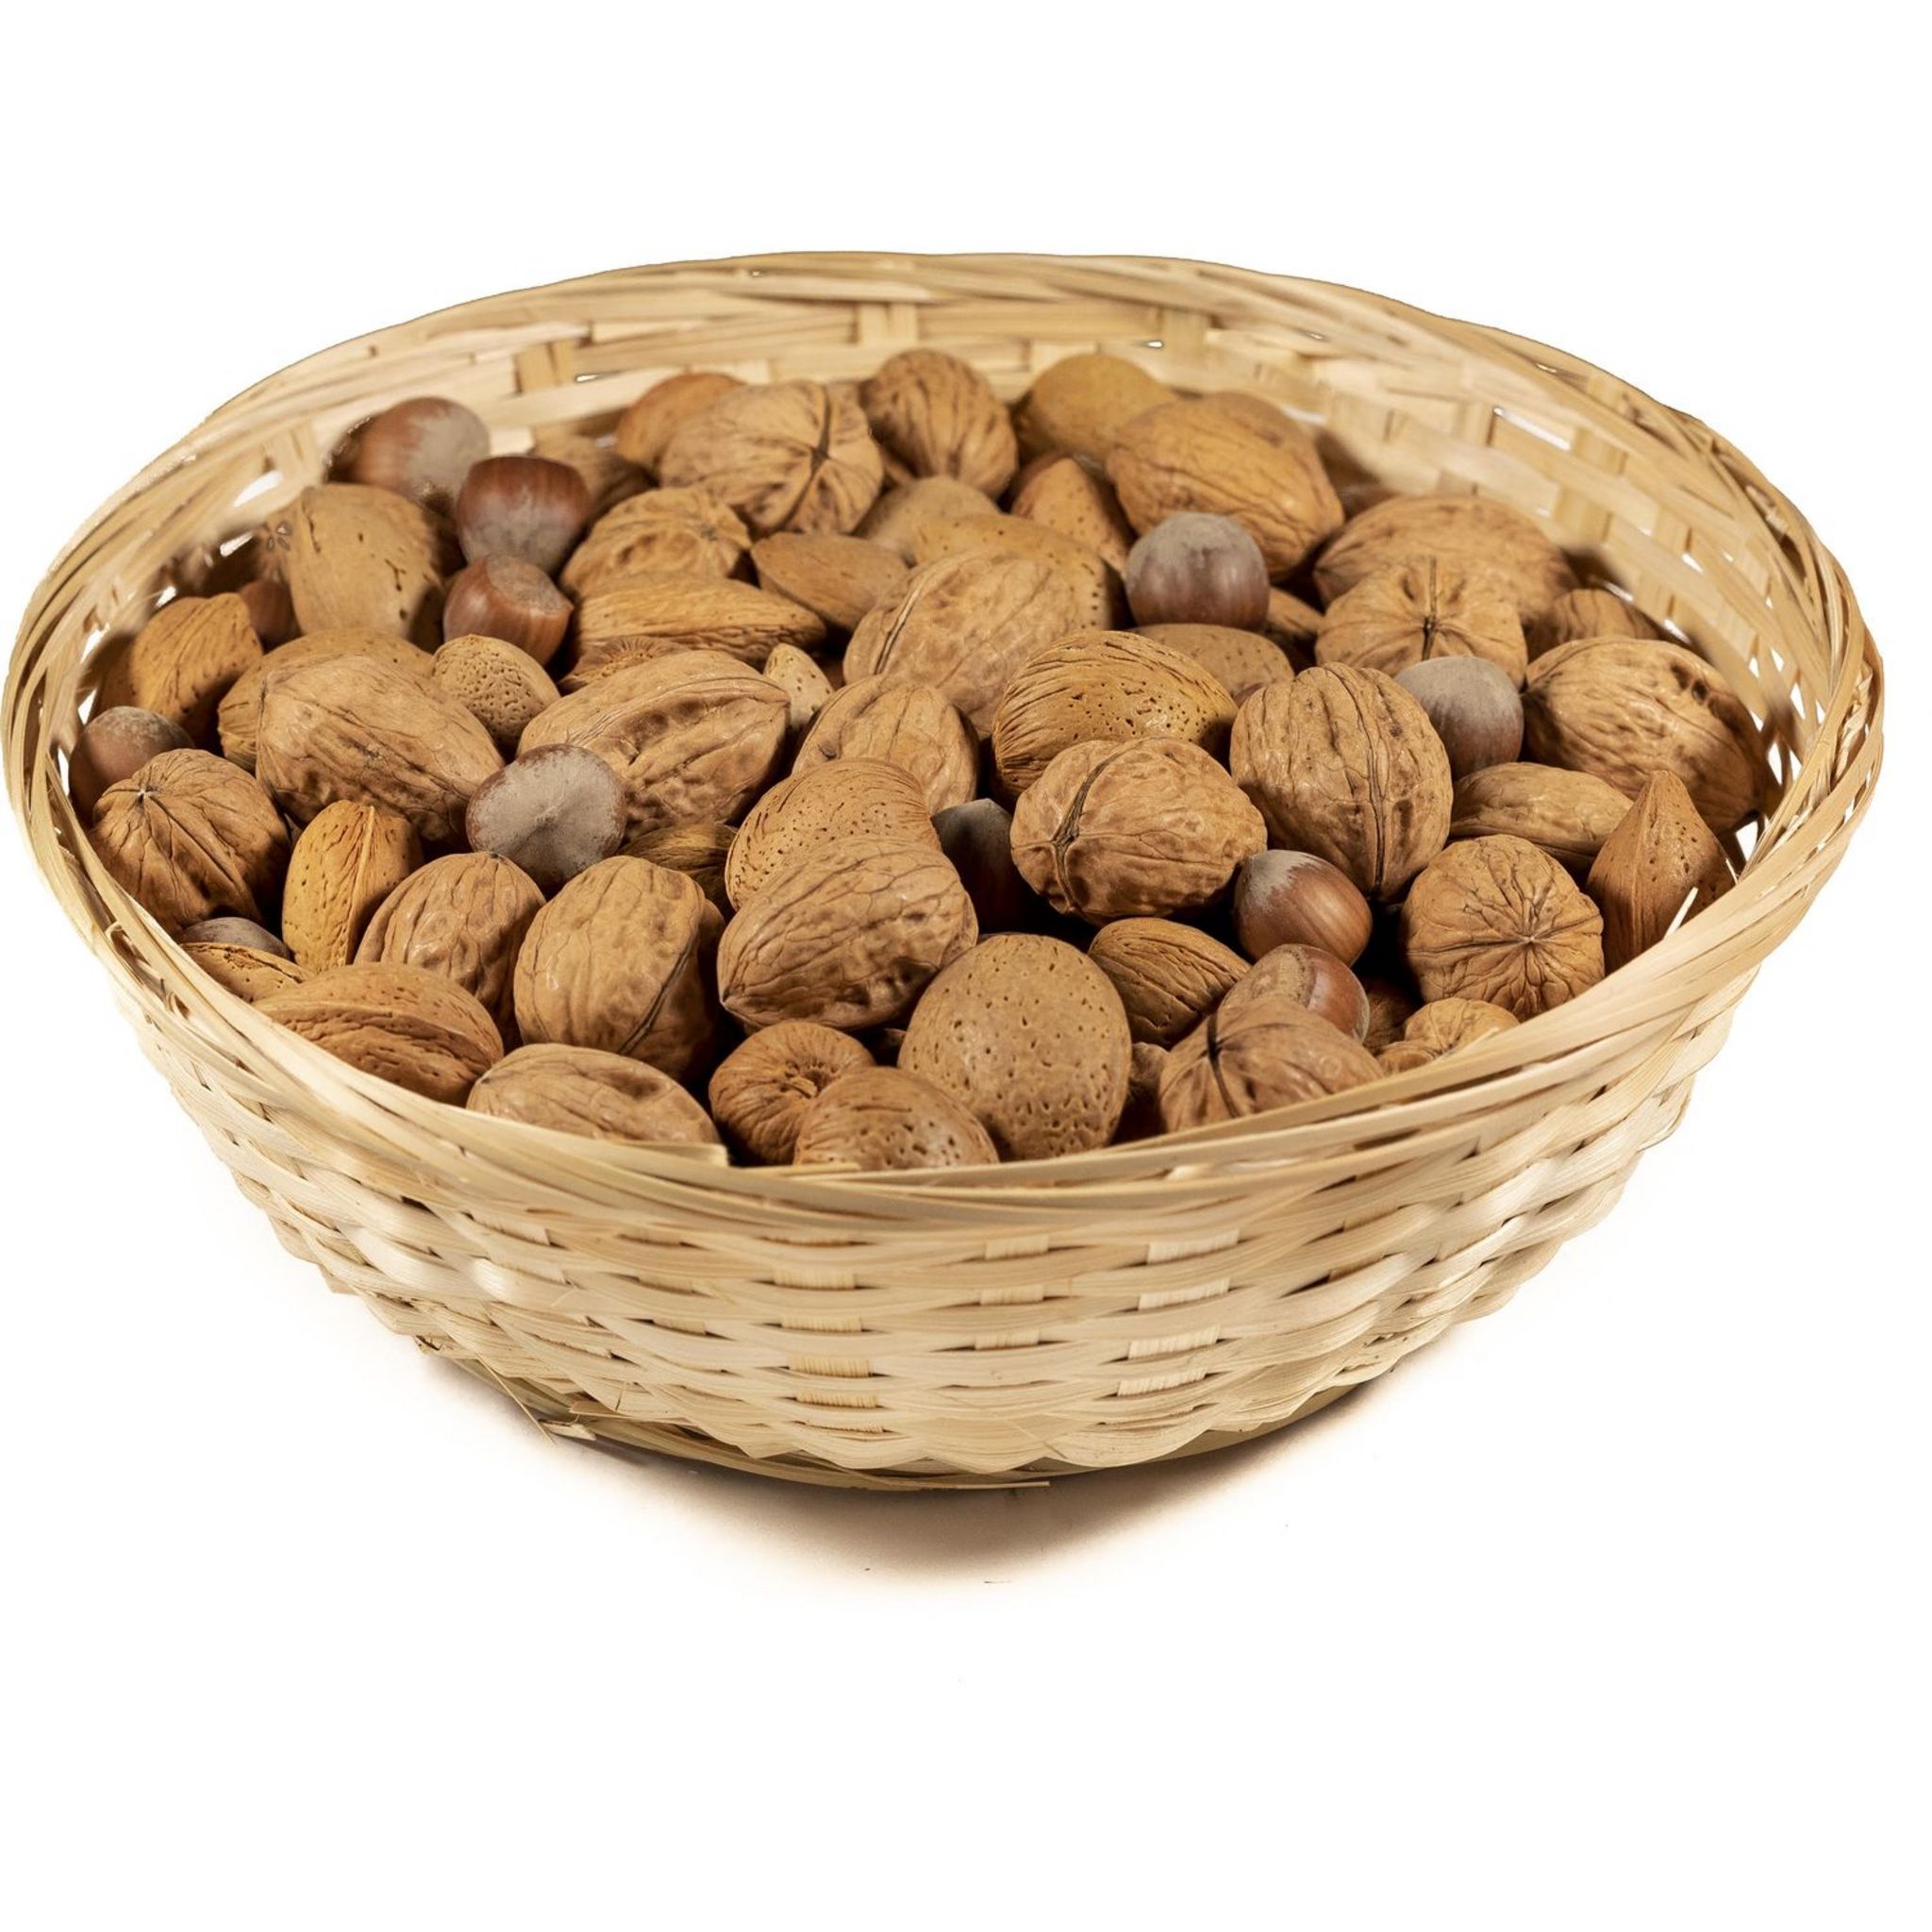 Corbeille de fruits secs : noix, noisettes et amandes 1kg pas cher